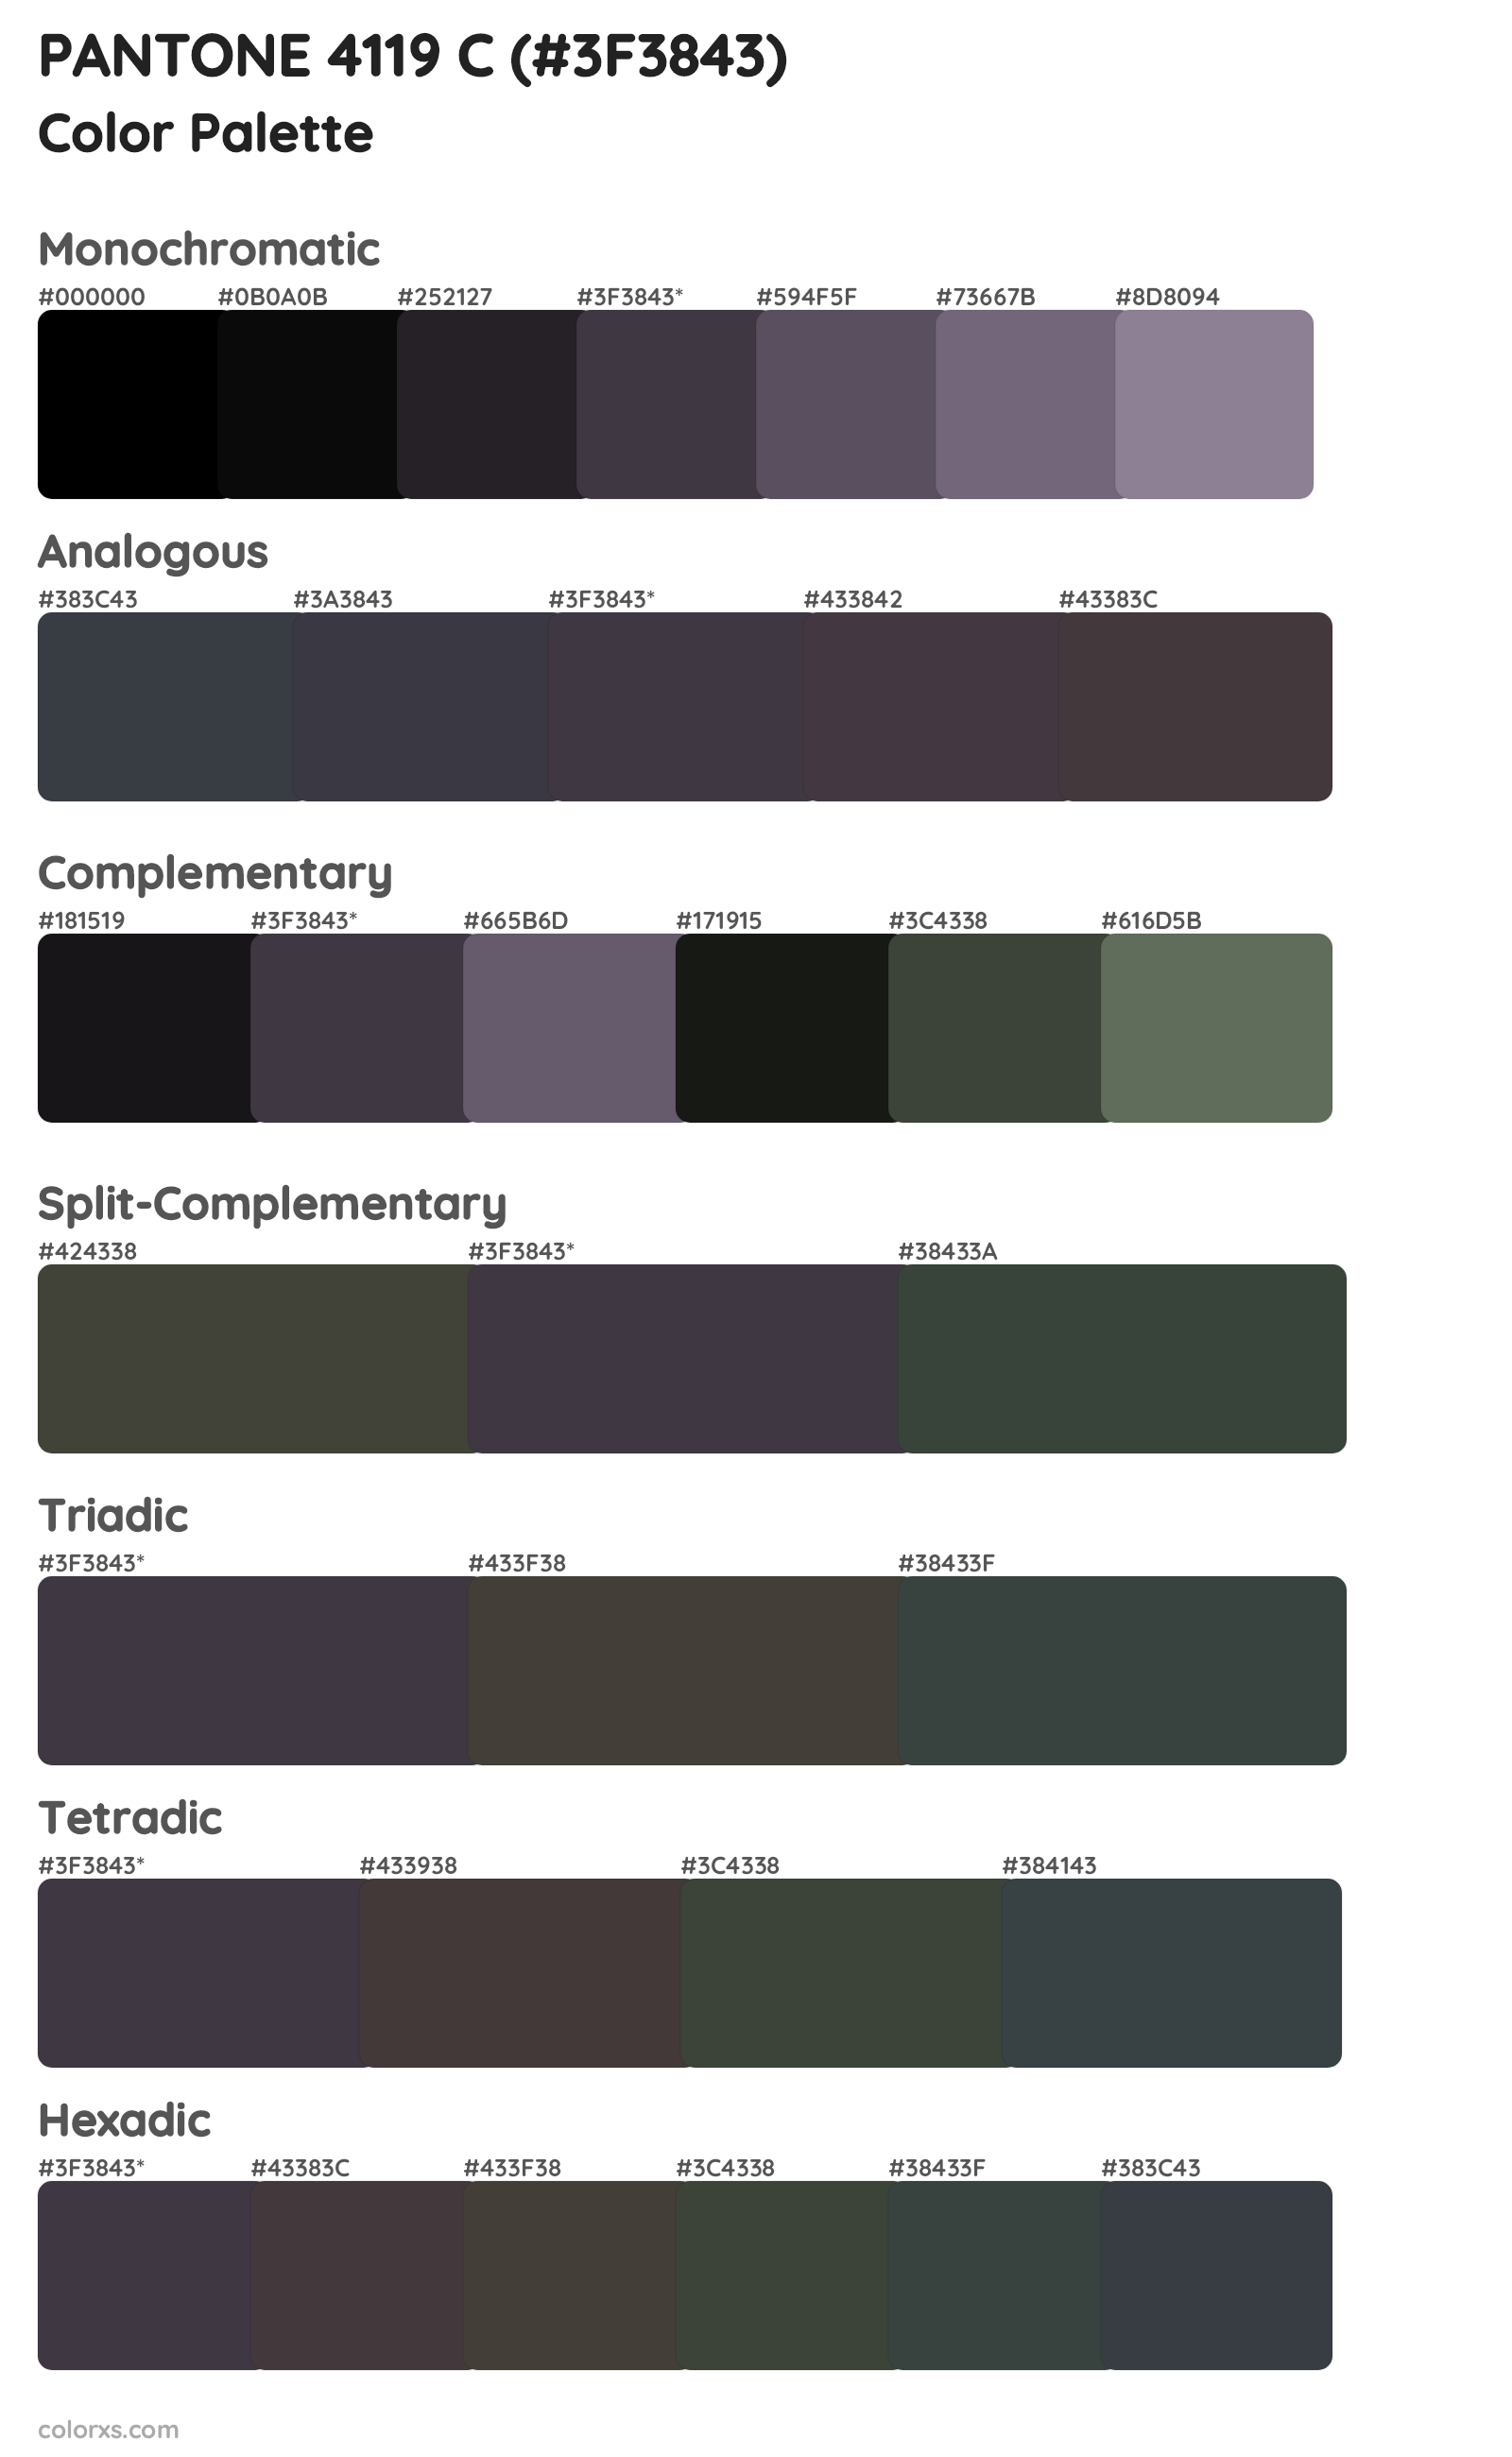 PANTONE 4119 C Color Scheme Palettes